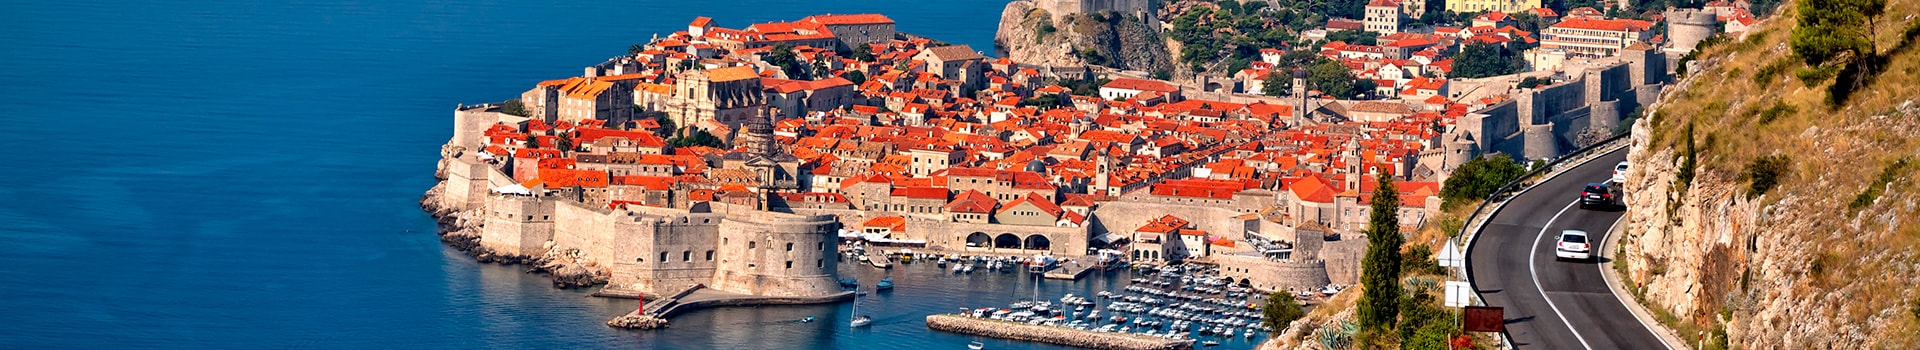 Saragoça - Dubrovnik